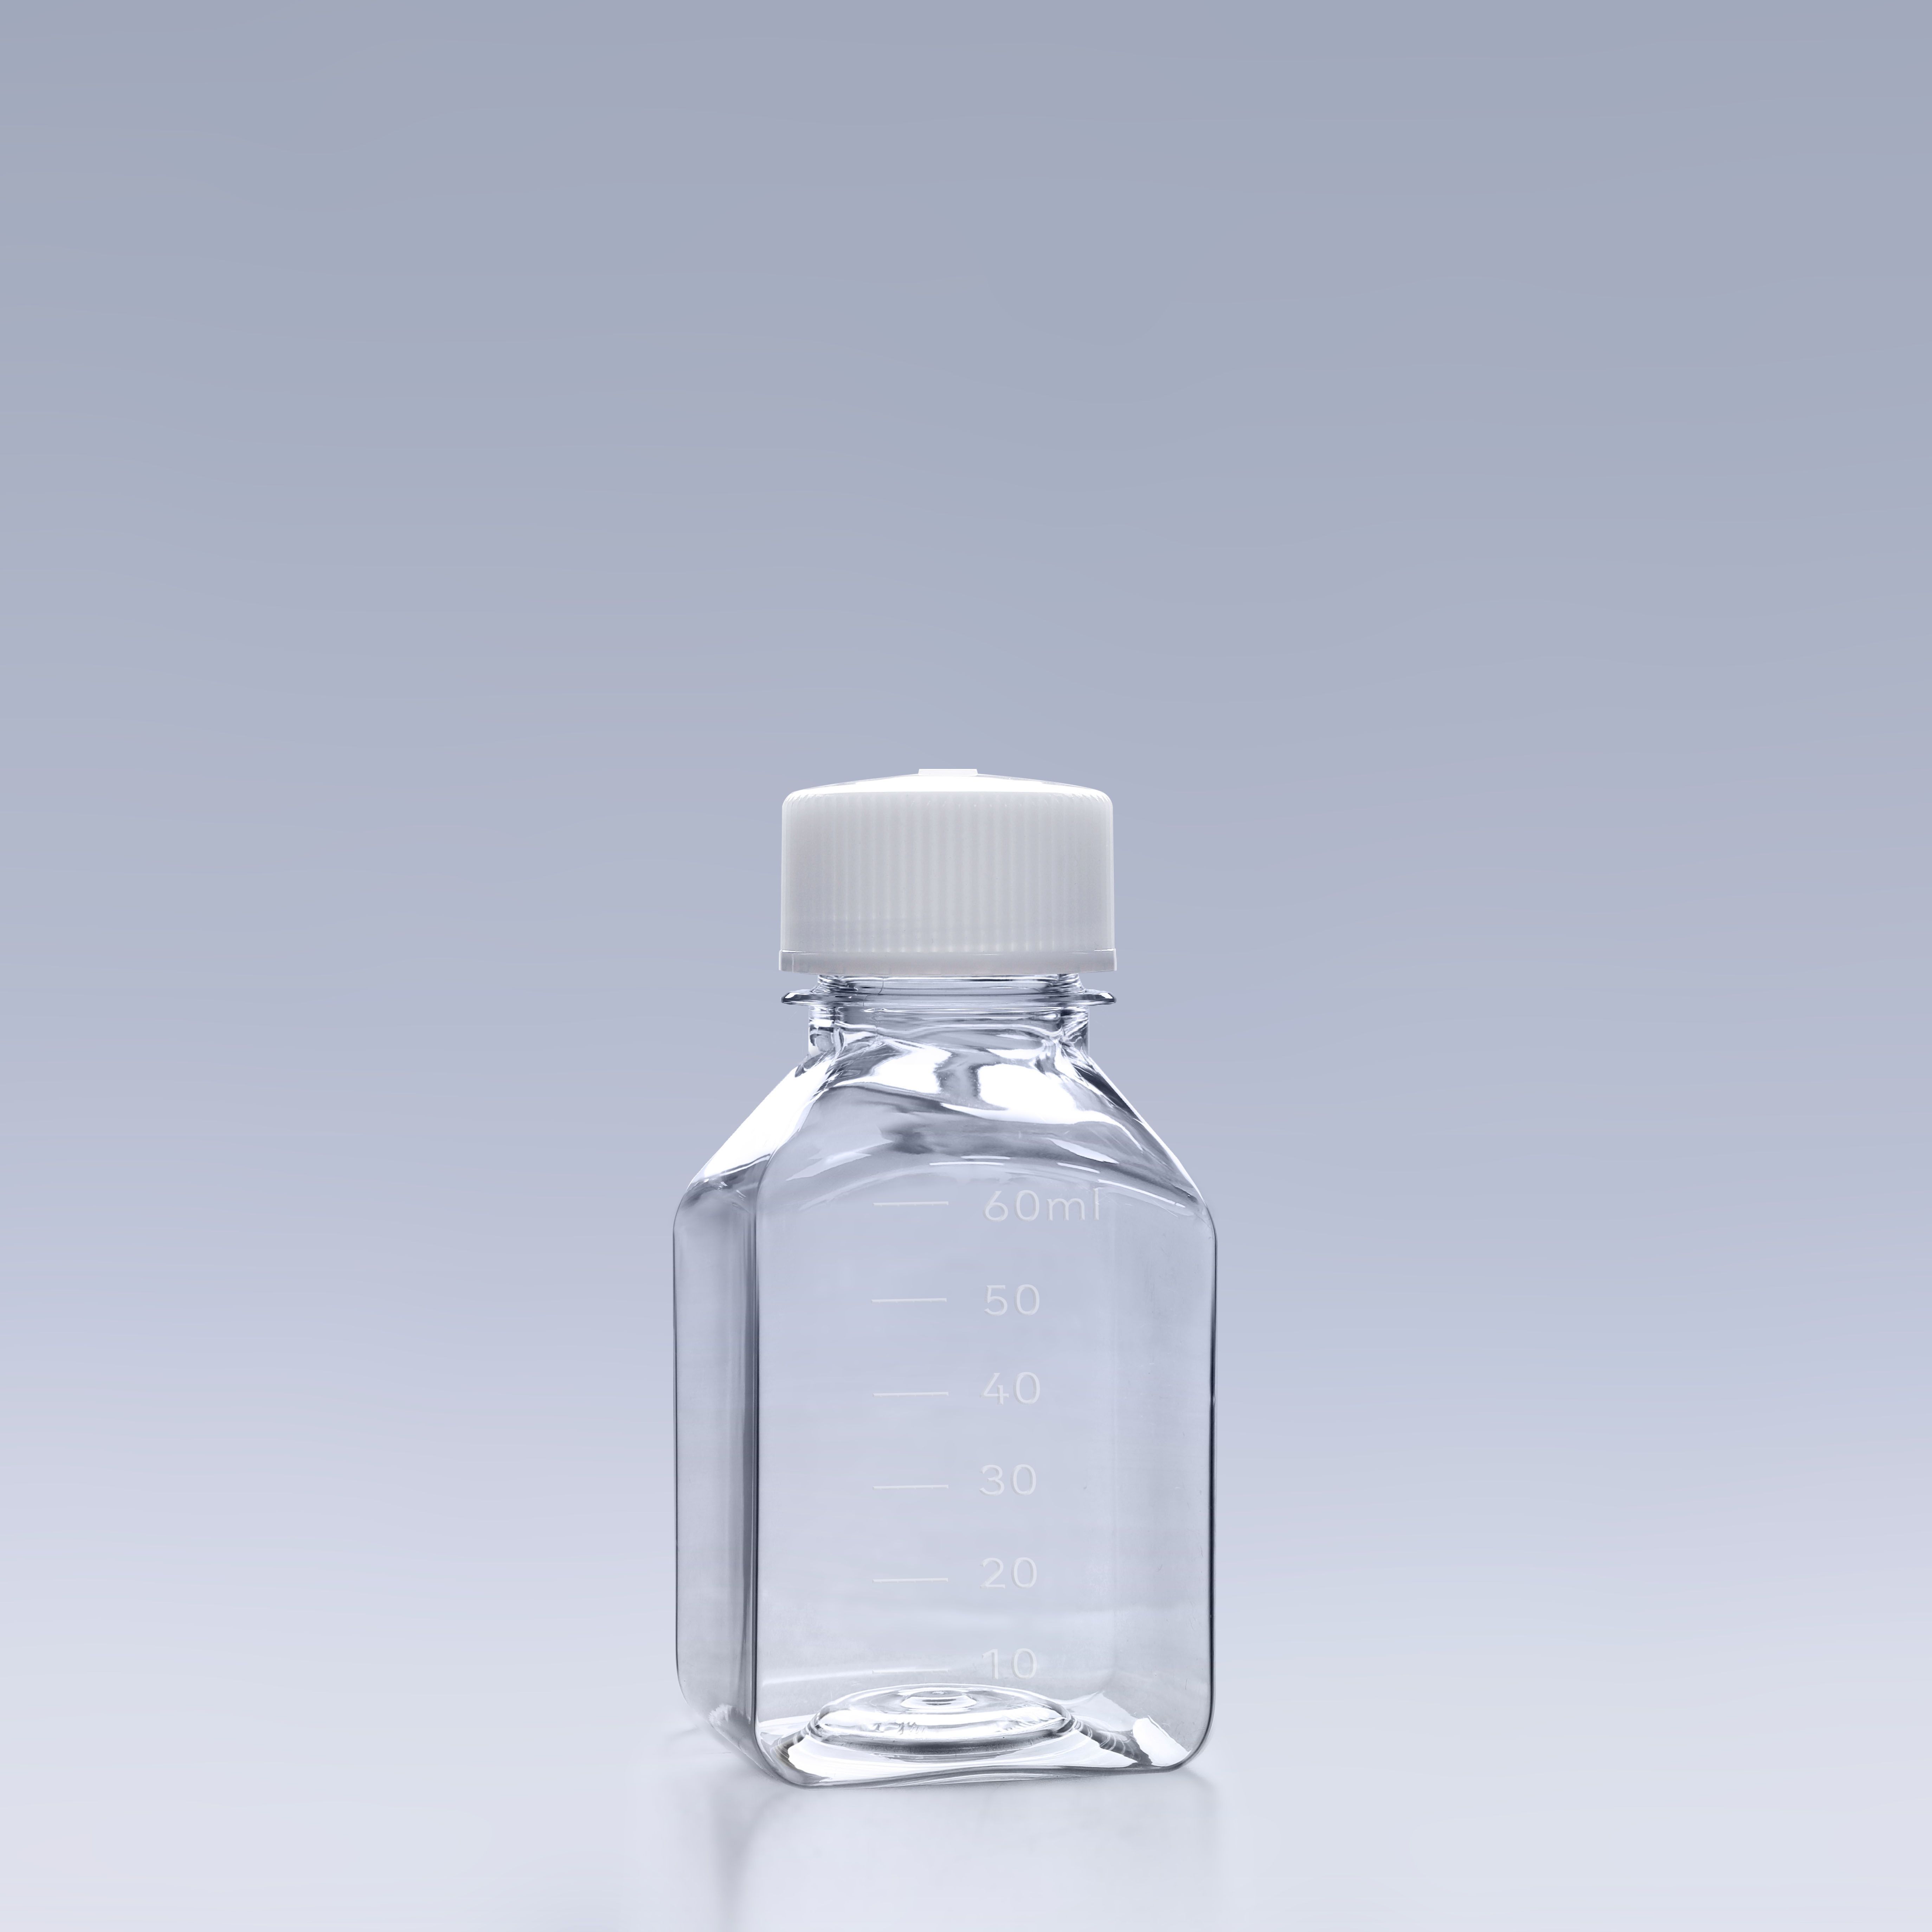 60ml血清瓶-培養基瓶-方形培養基瓶